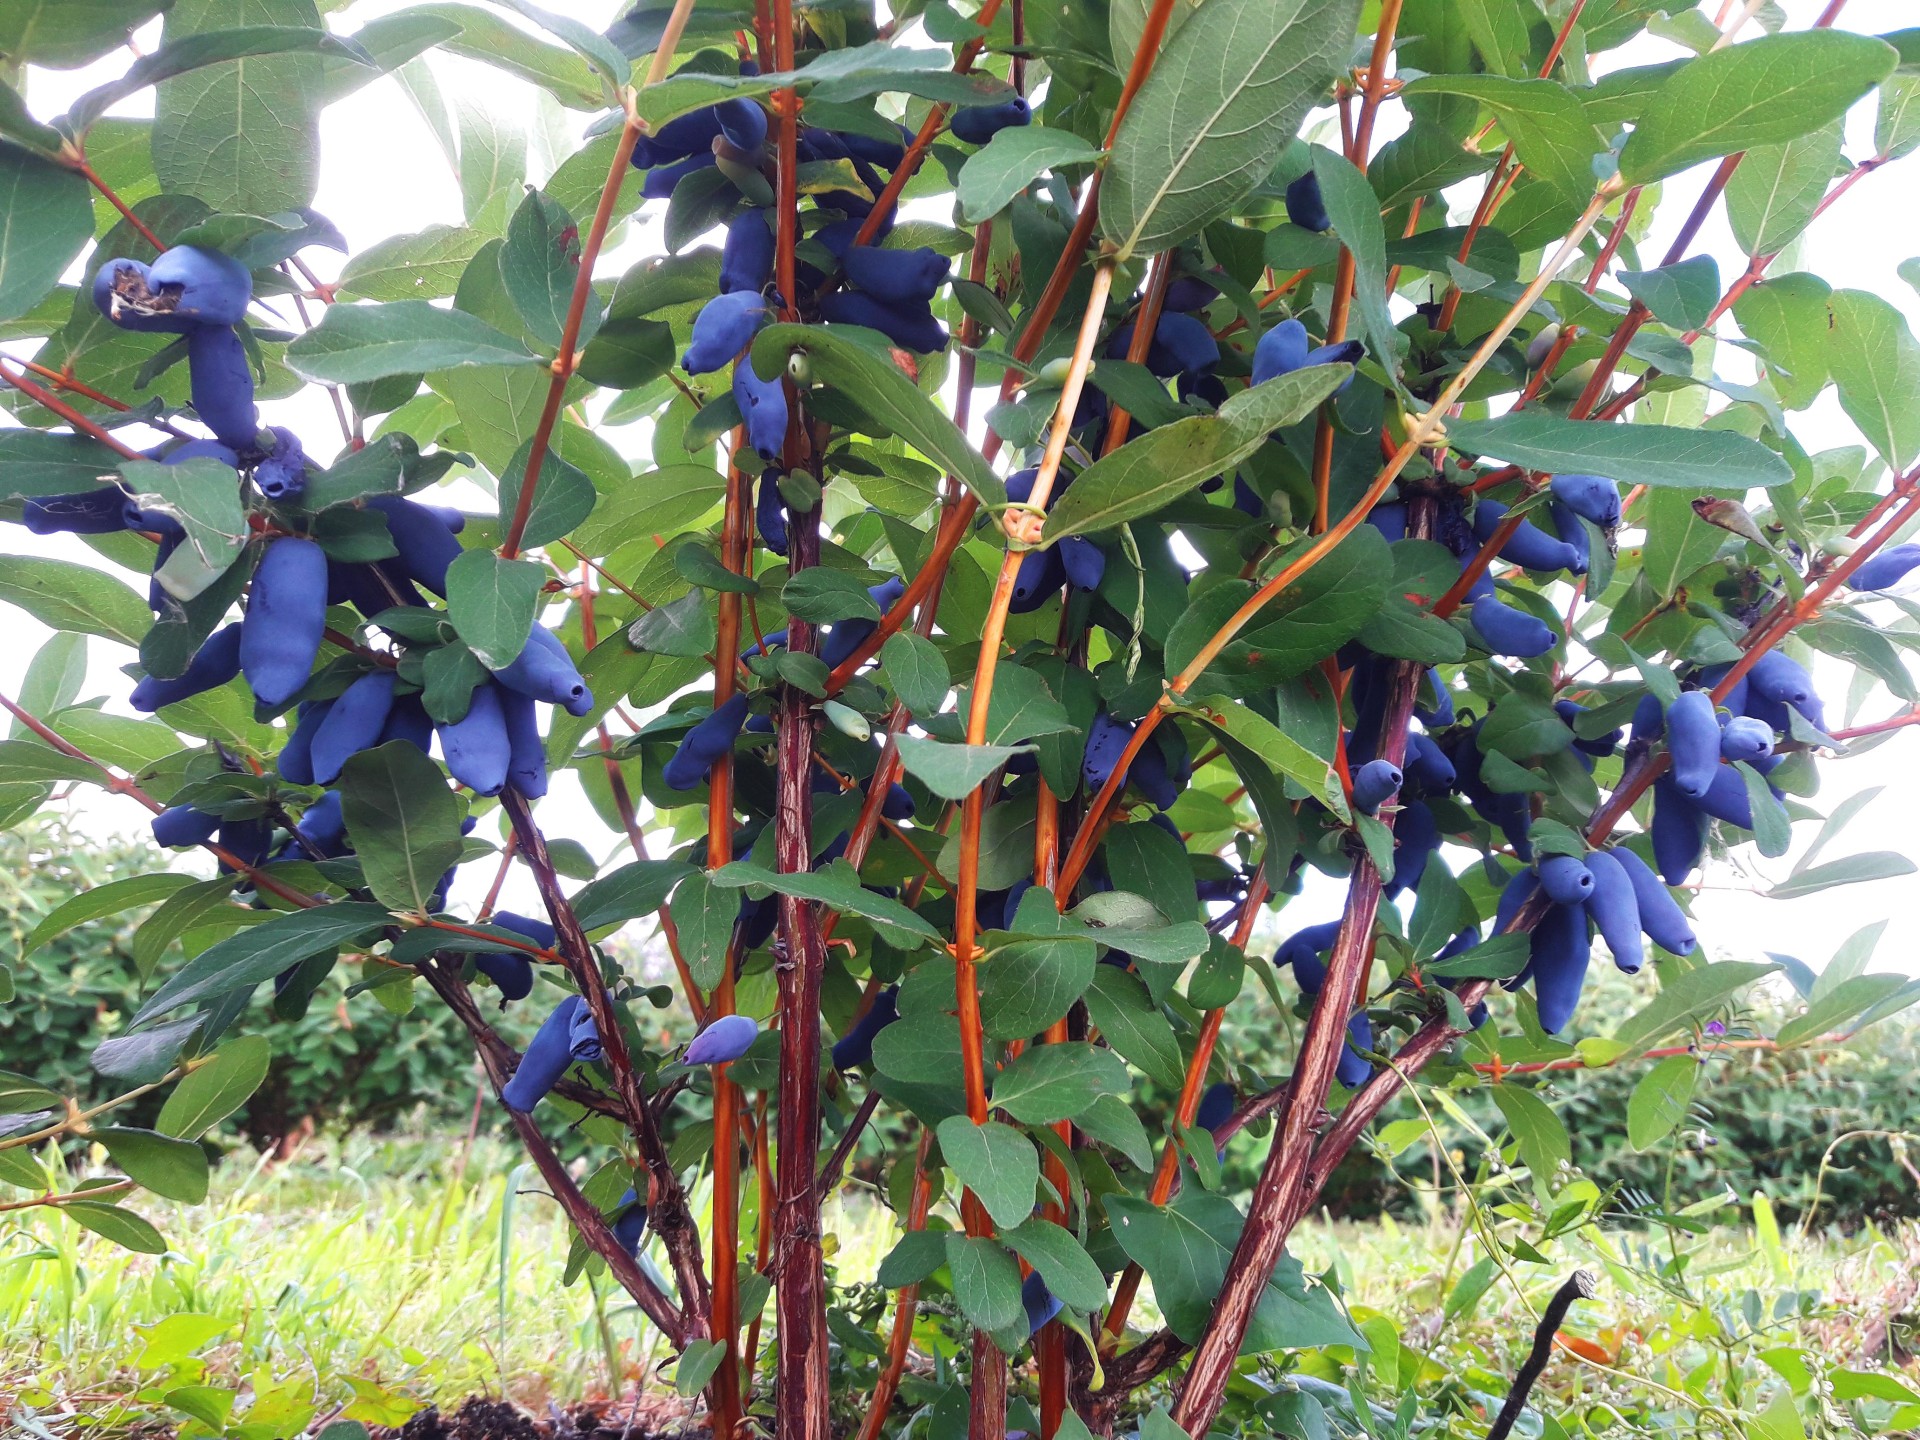 http://klandaic.ru/gardener/potokadr/berries/24honeysuckle.jpg